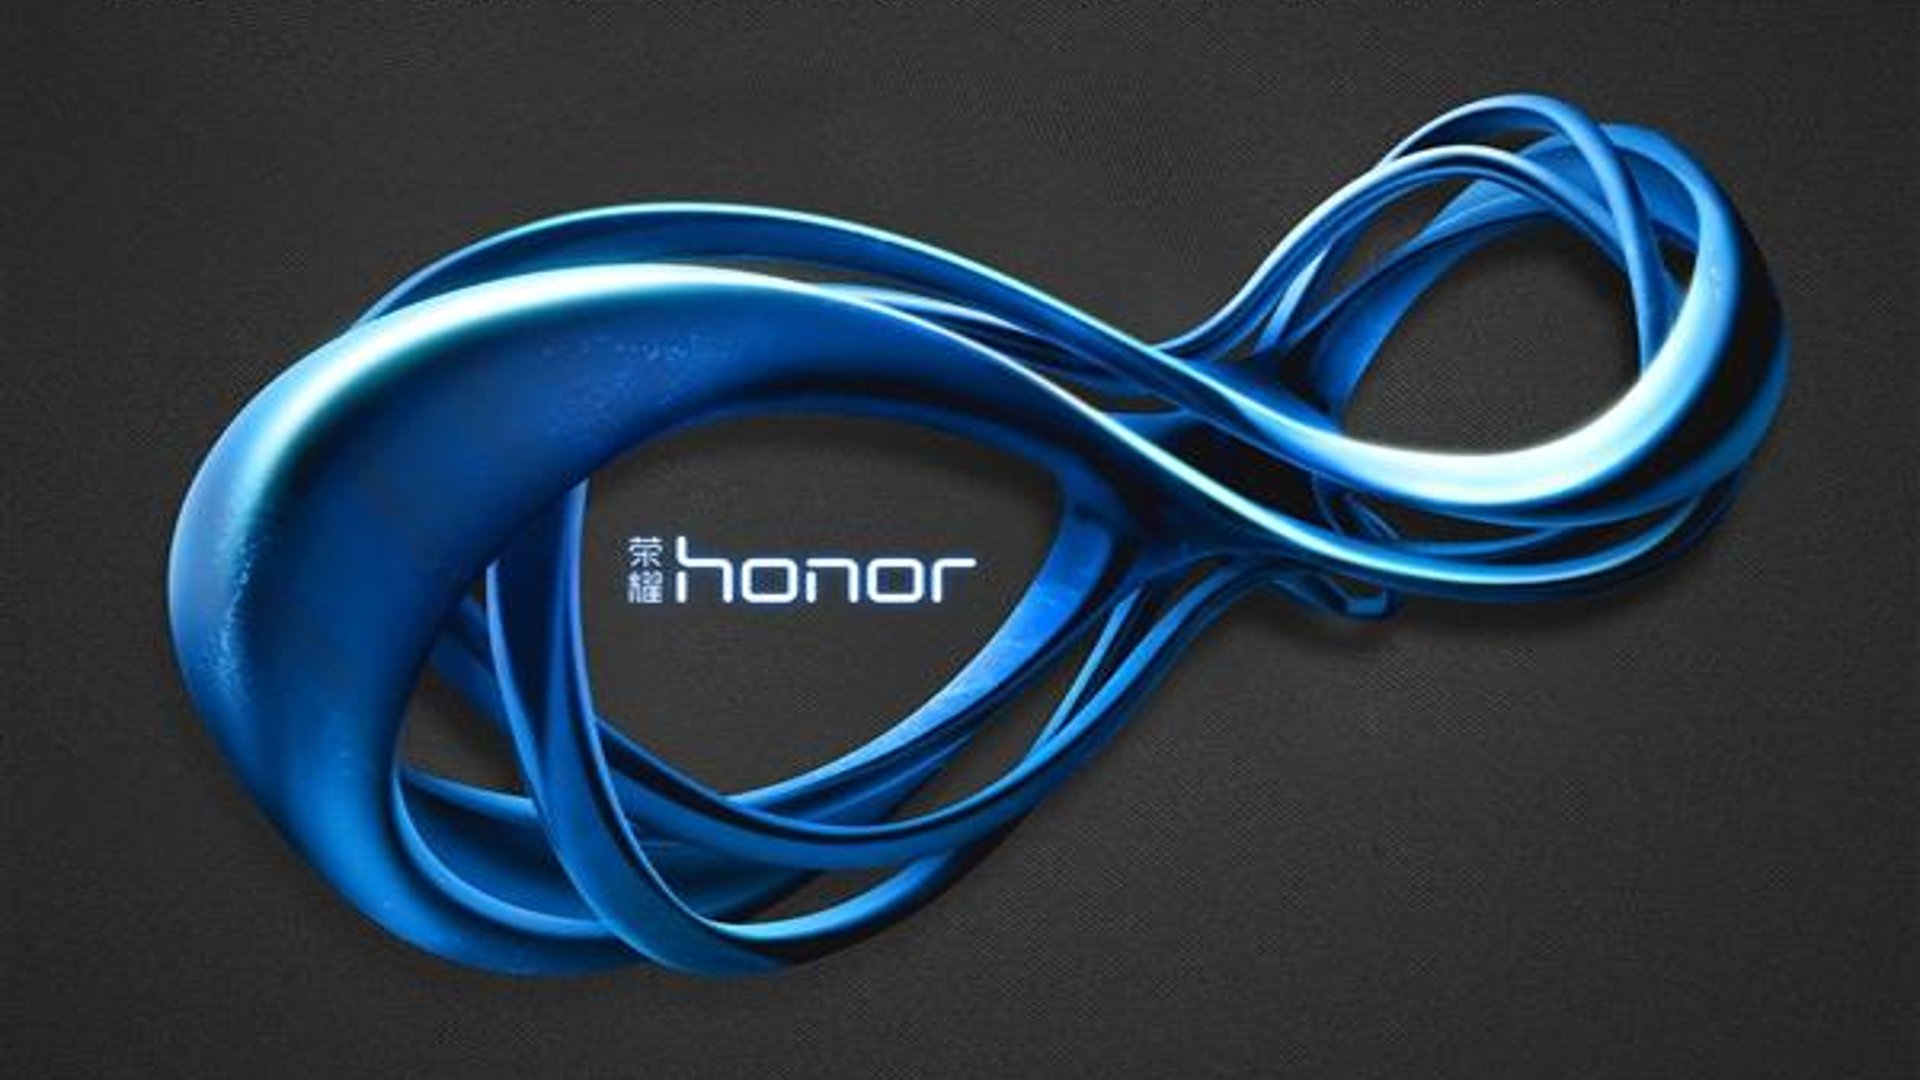 Honor V8 - Announcement Teaser